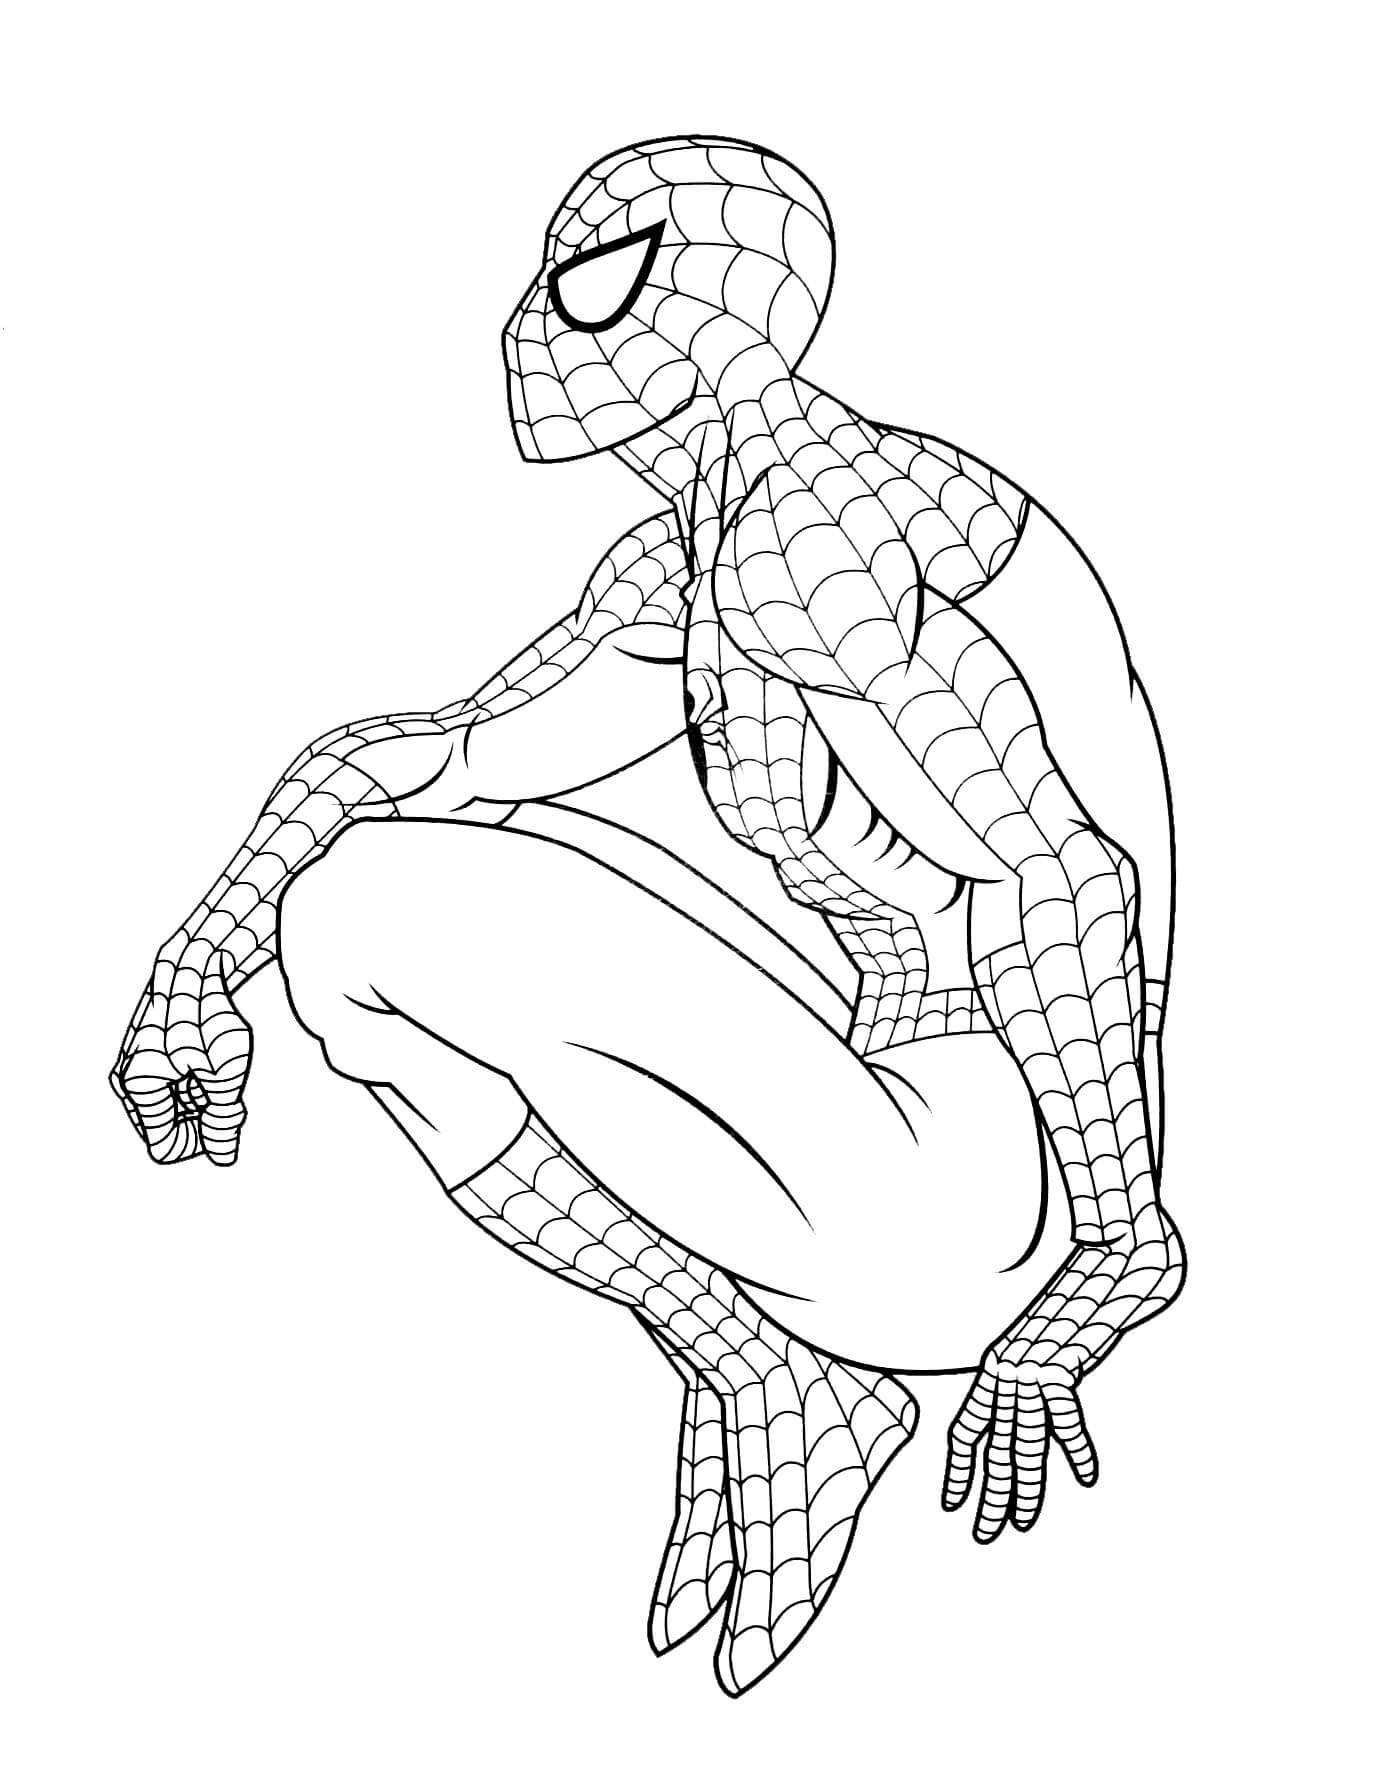 Spiderman Réfléchit coloring page